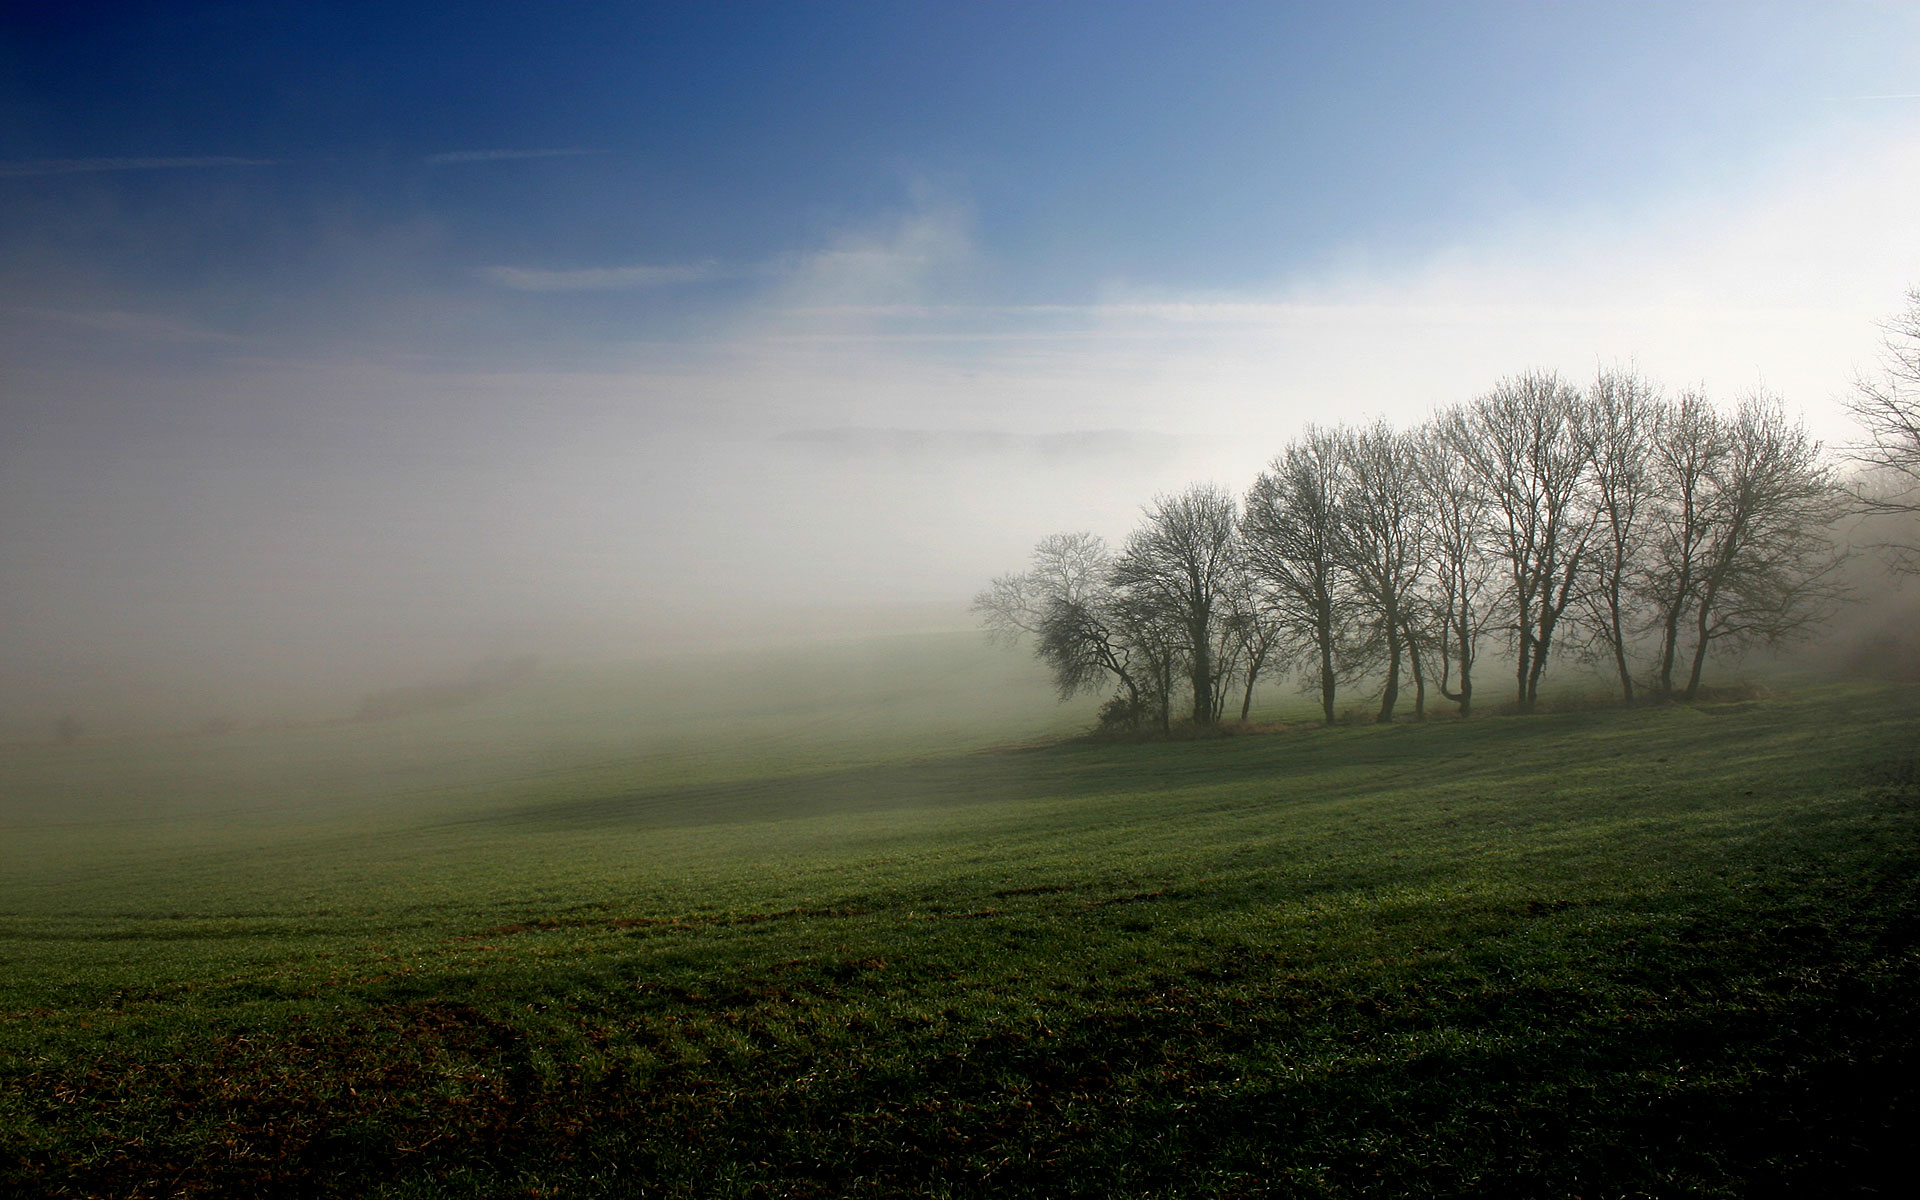 landscapes, trees, fields, mist - desktop wallpaper